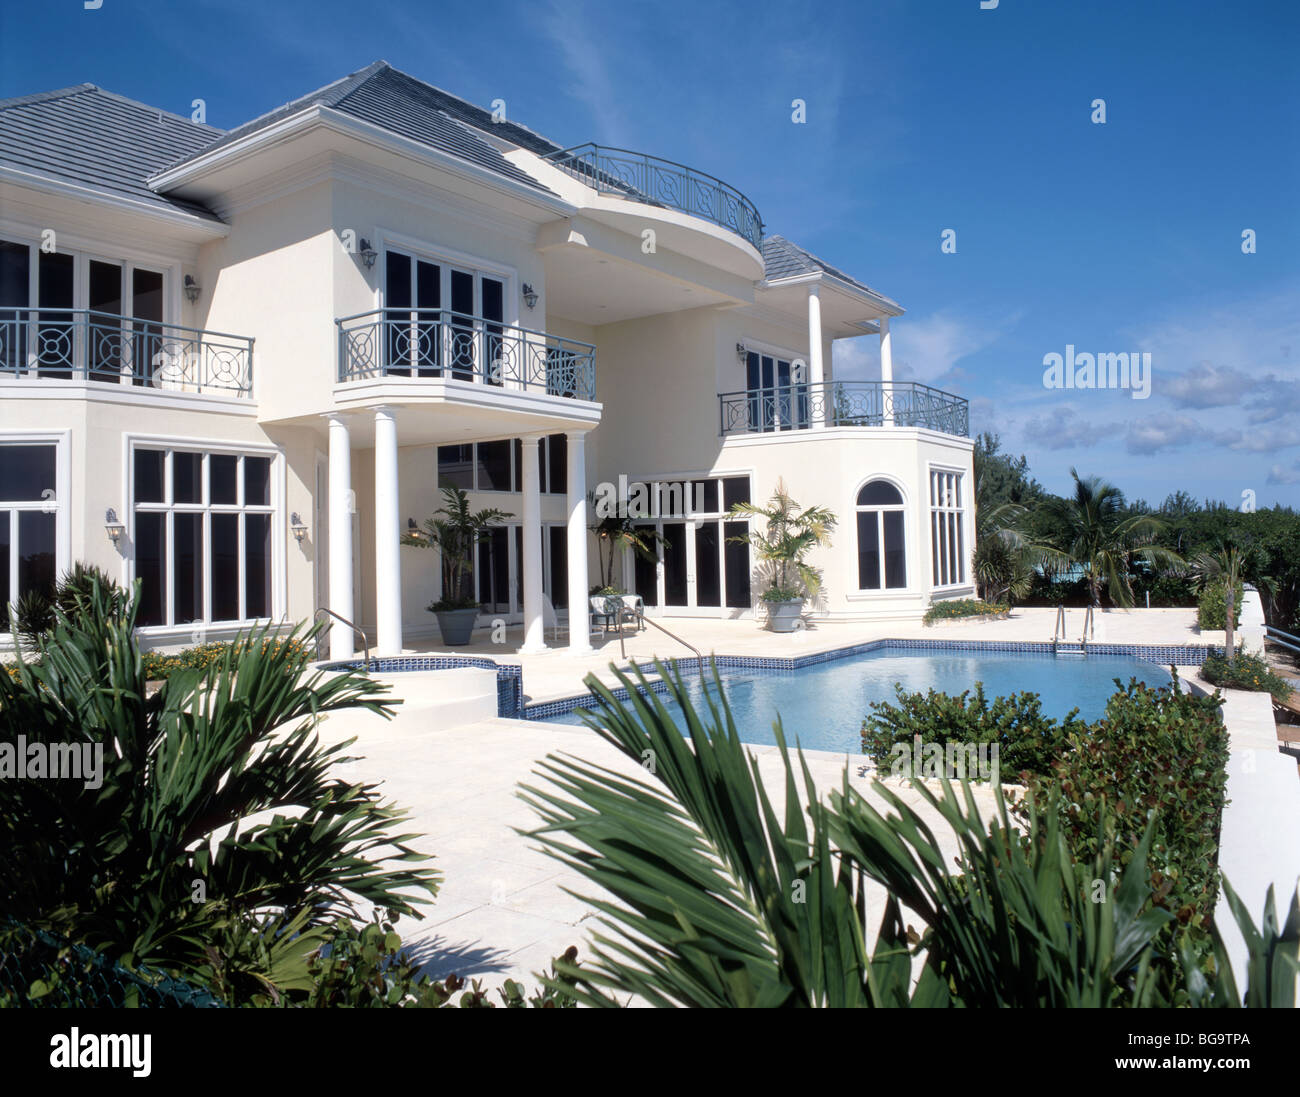 Maison de luxe avec piscine, Grand Cayman, Cayman Islands, Caribbean Banque D'Images